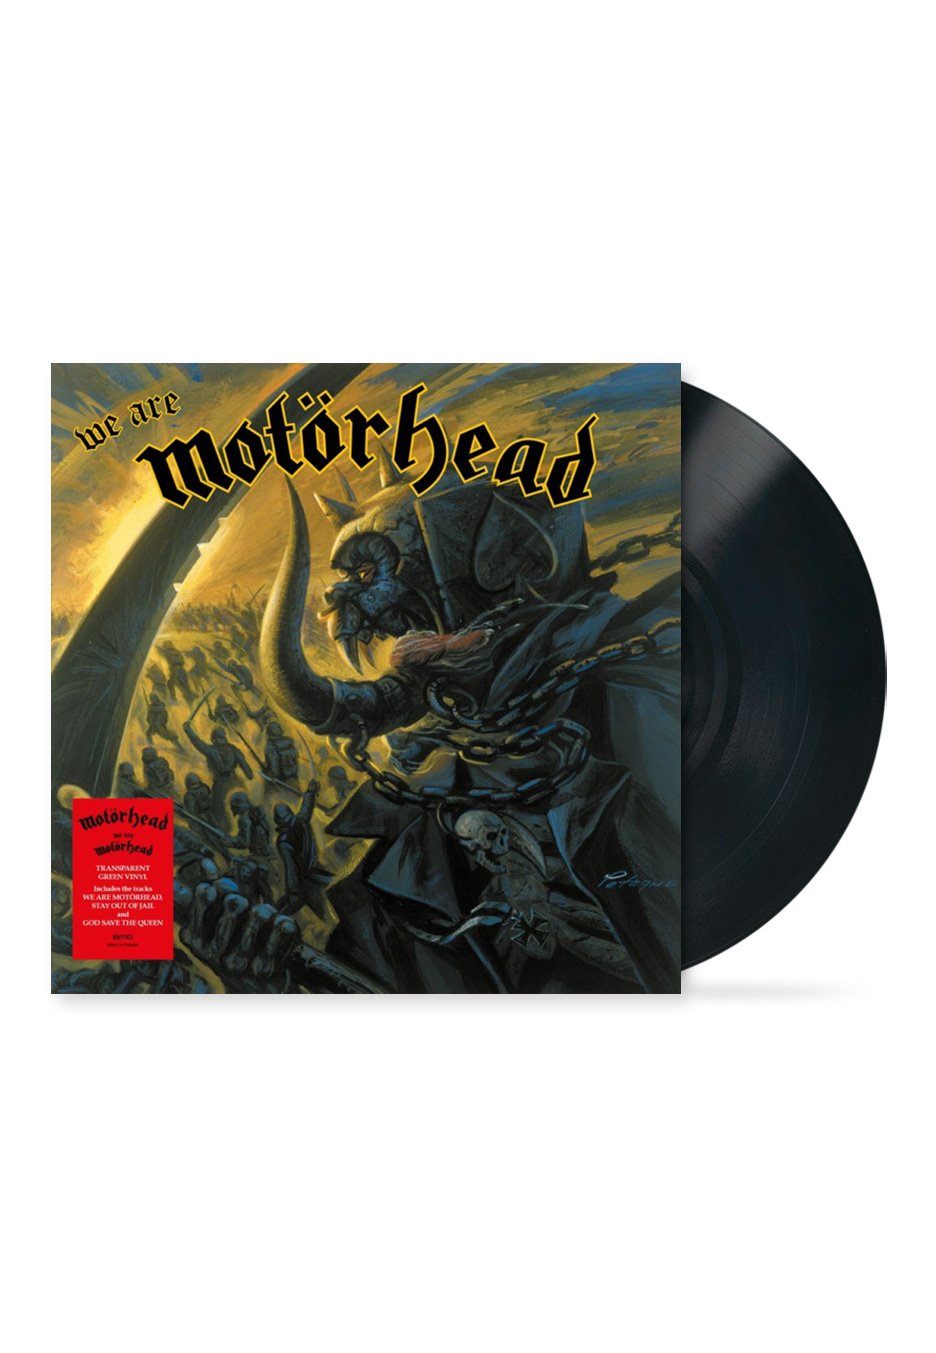 Motörhead - We Are Motörhead - Vinyl